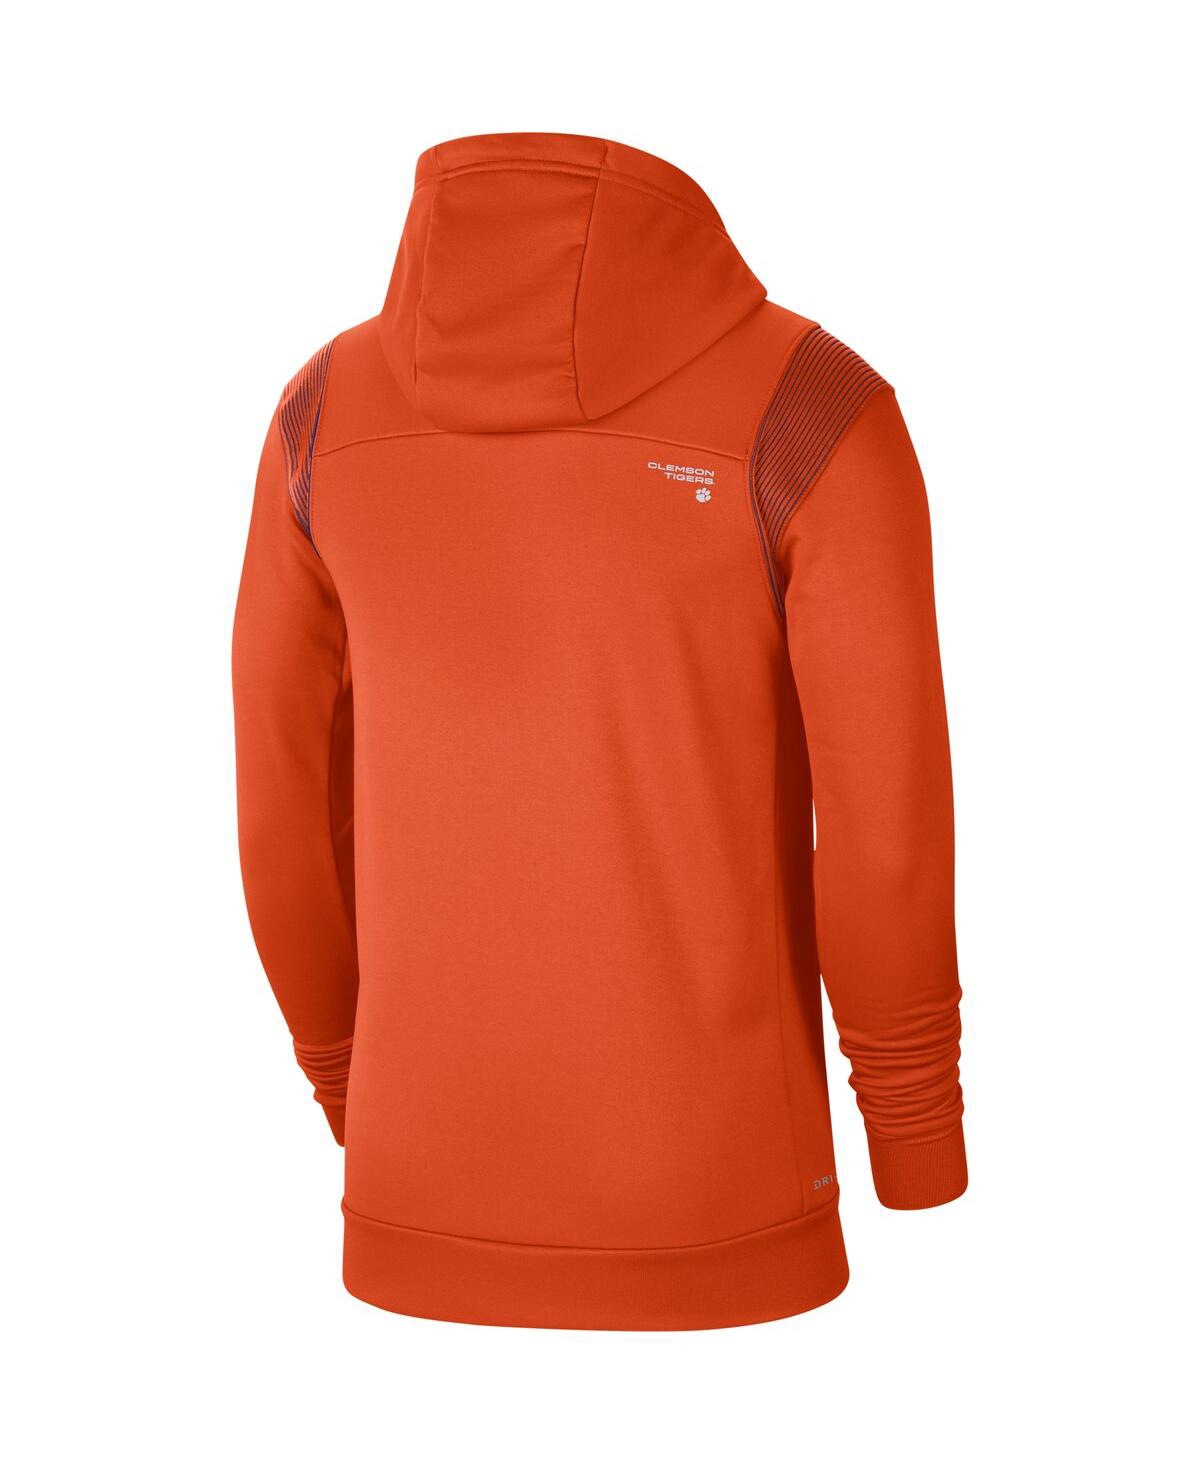 Shop Nike Men's Orange Clemson Tigers 2021 Sideline Performance Full-zip Hoodie